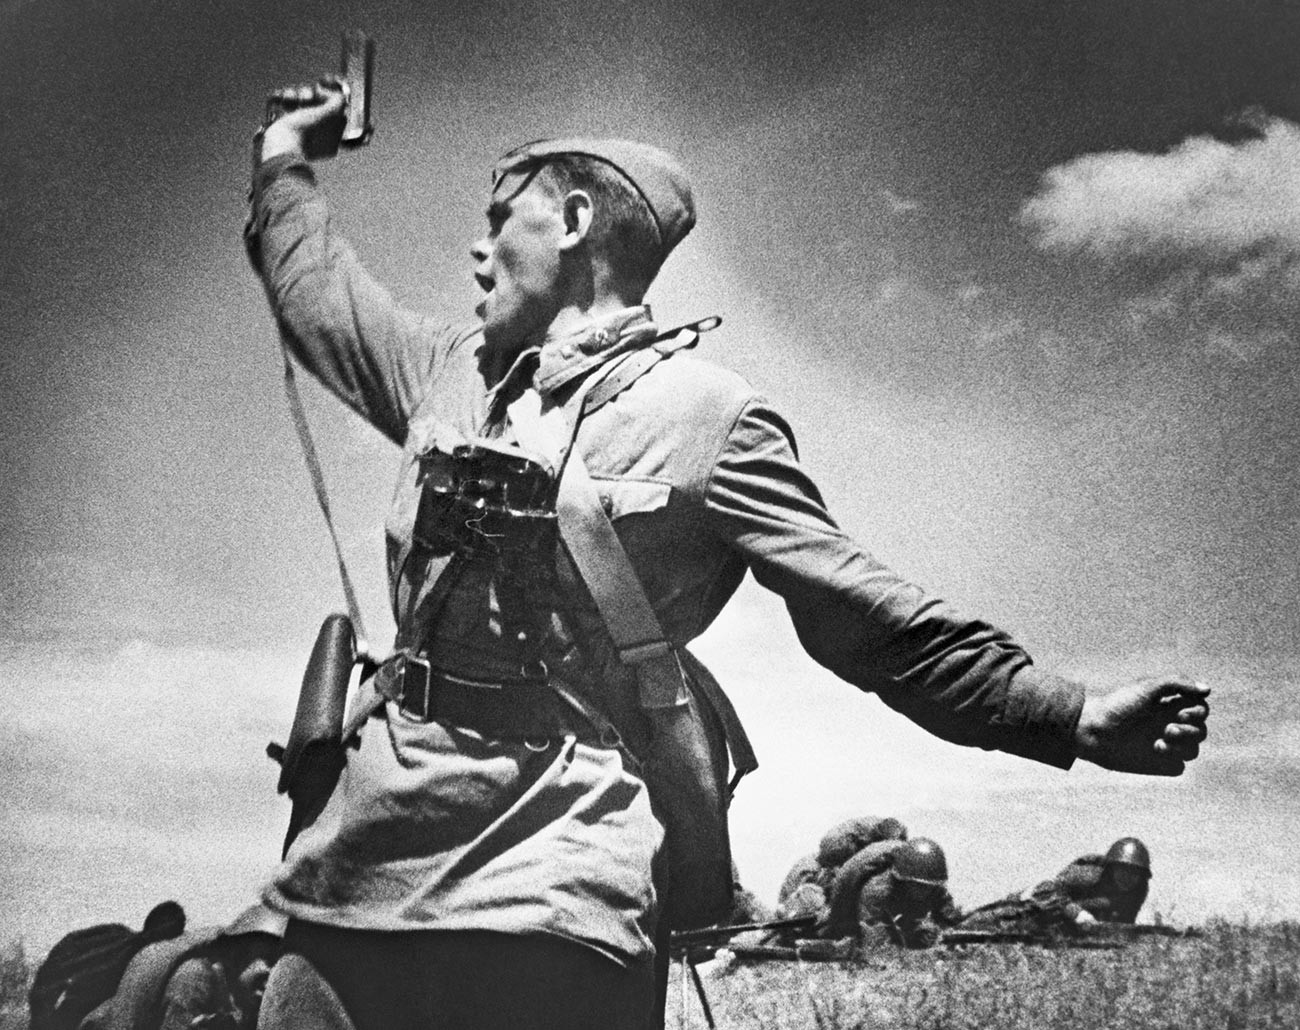 Politoffizier Alexei Jeremenko führt seine Soldaten in den Kampf gegen die deutschen Positionen in der Ukraine am 12. Juli 1942. Er wurde wenige Minuten nach dieser Fotoaufnahme getötet.